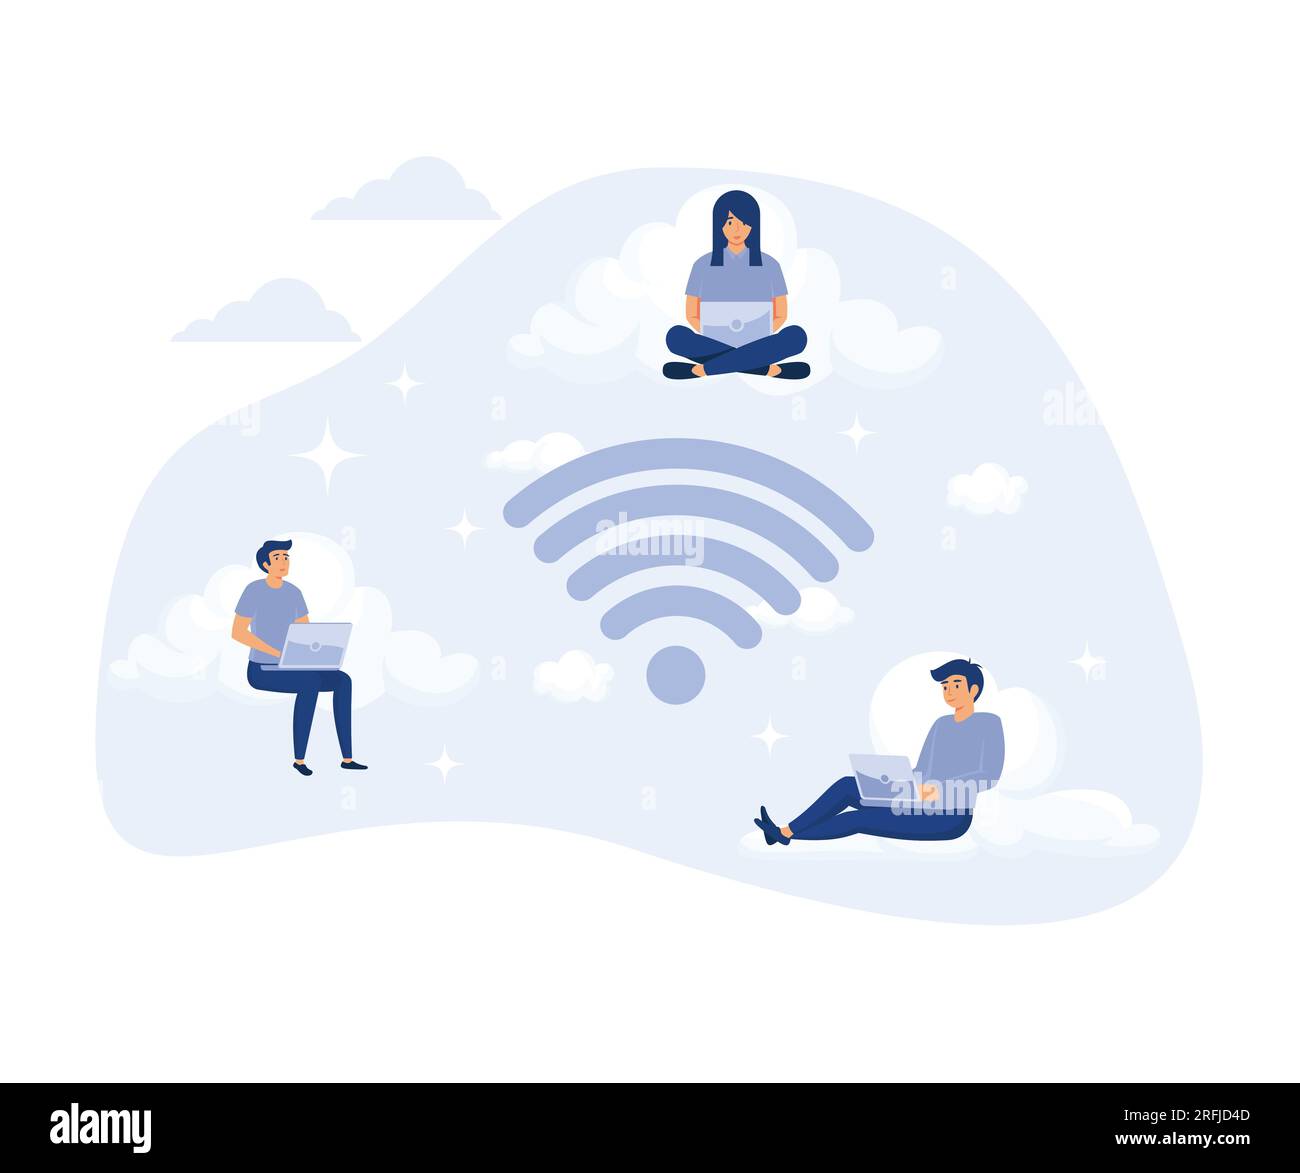 Conexión inalámbrica, hombre y mujer trabajando, redes sociales y chat usando almacenamiento en la nube, ilustración moderna de vector plano Ilustración del Vector